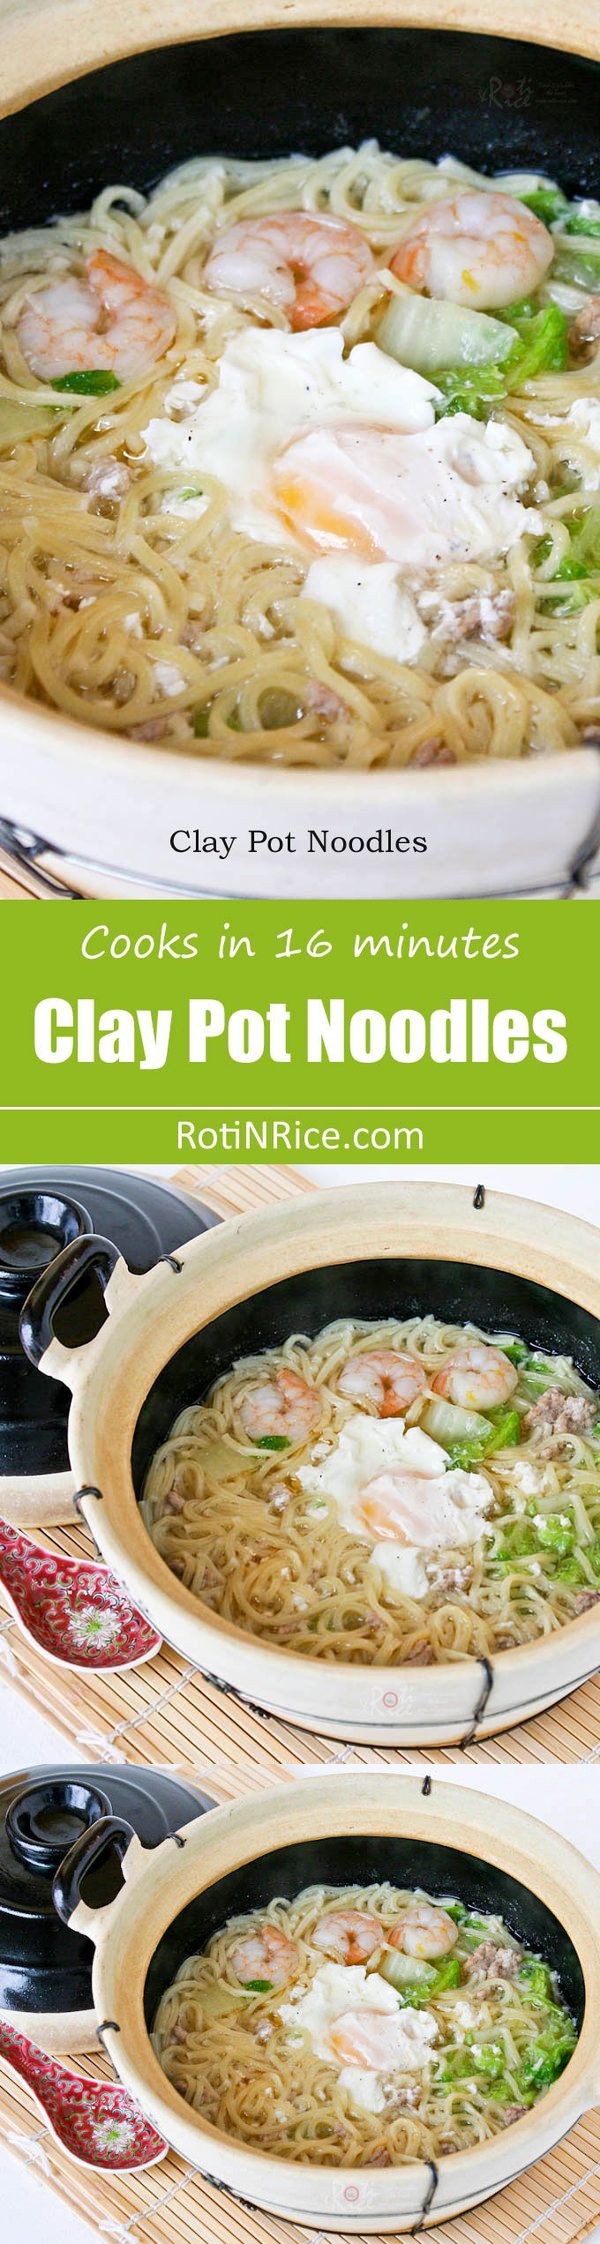 Clay Pot Noodles